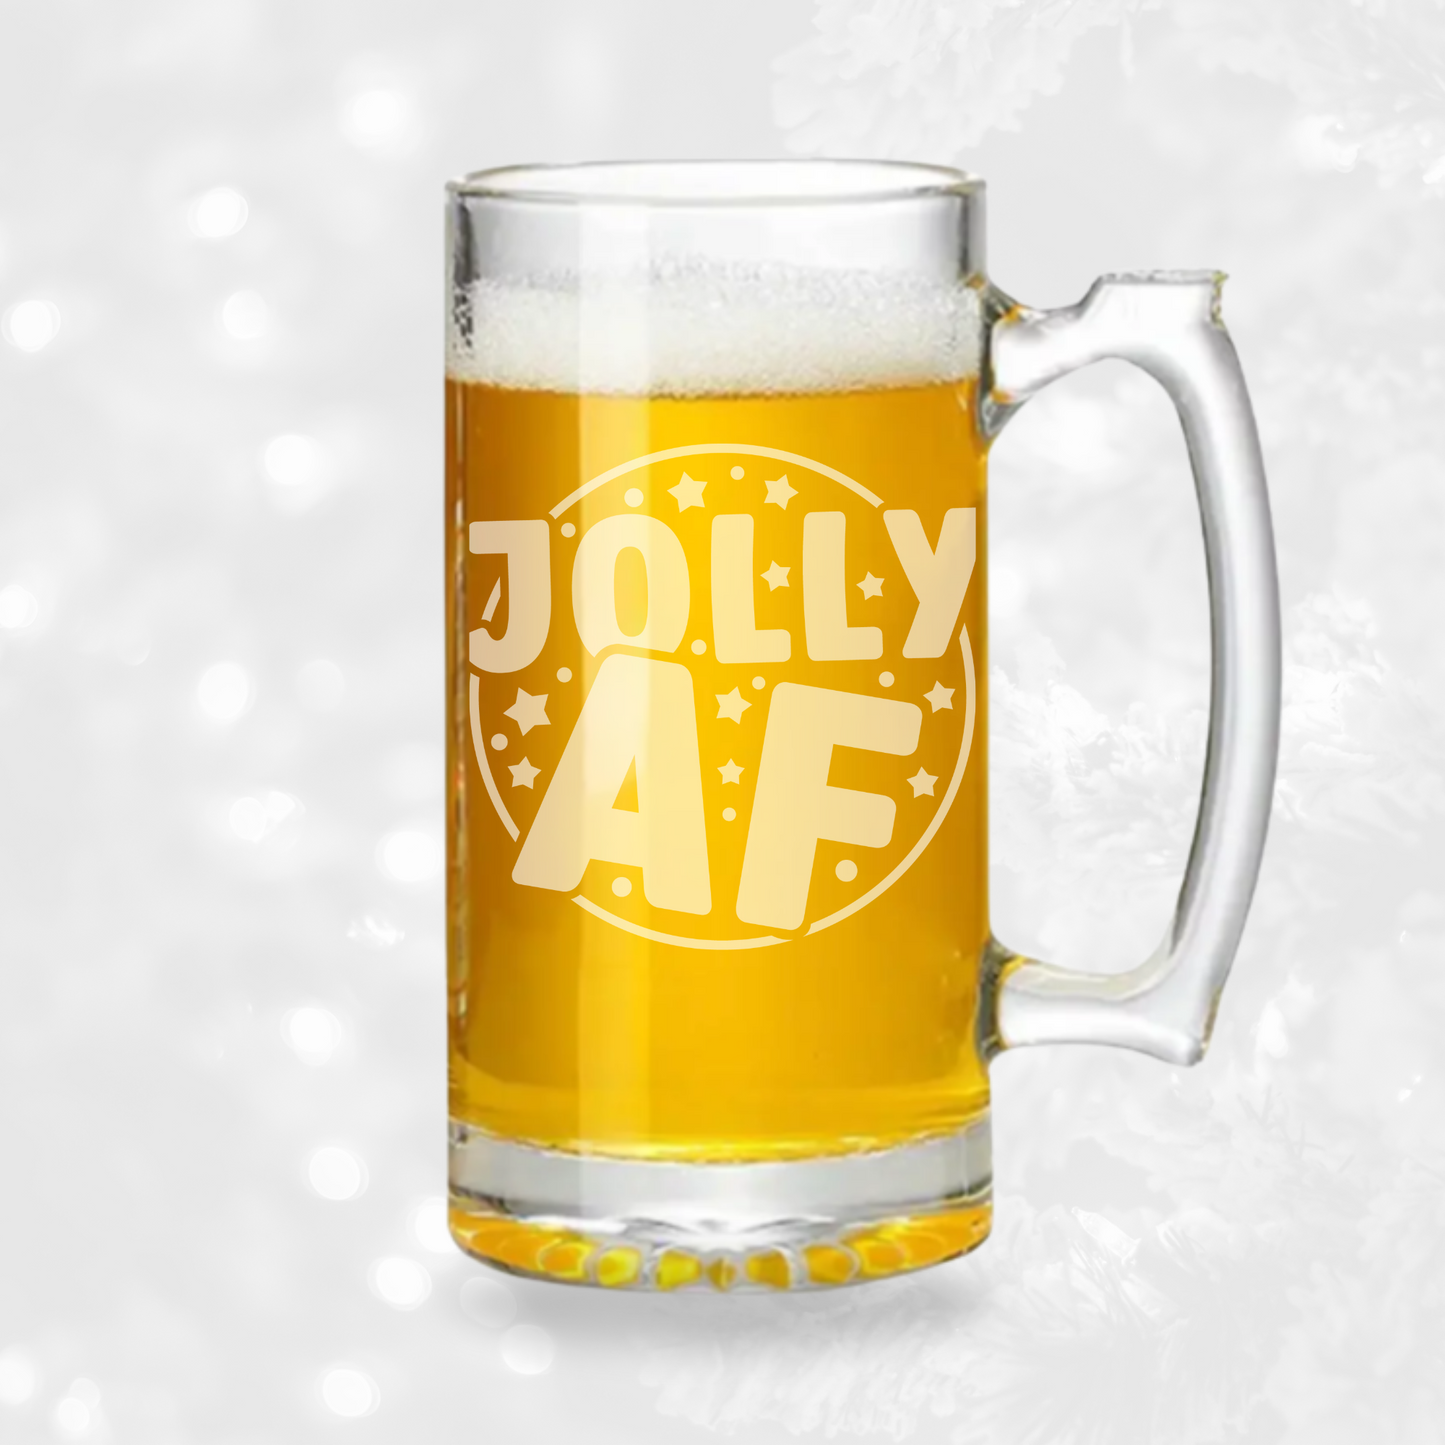 Jolly AF - 26.5oz Tavern Beer Mug | Christmas - Expressive DeZien 